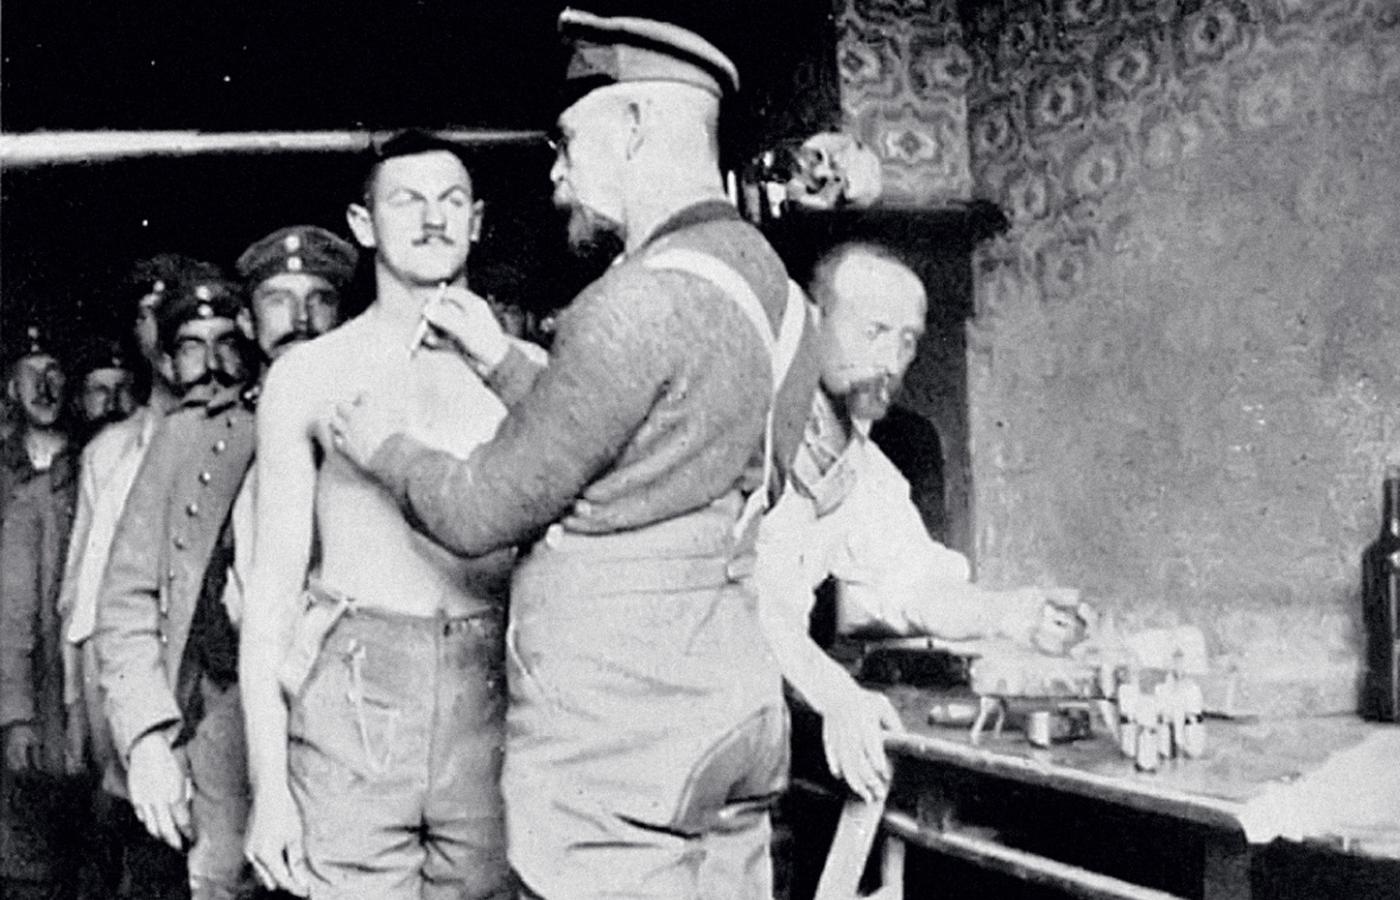 Kampania profilaktyczna przeciwko tyfusowi w armii niemieckiej, niedatowana fotografia z czasów wojny.